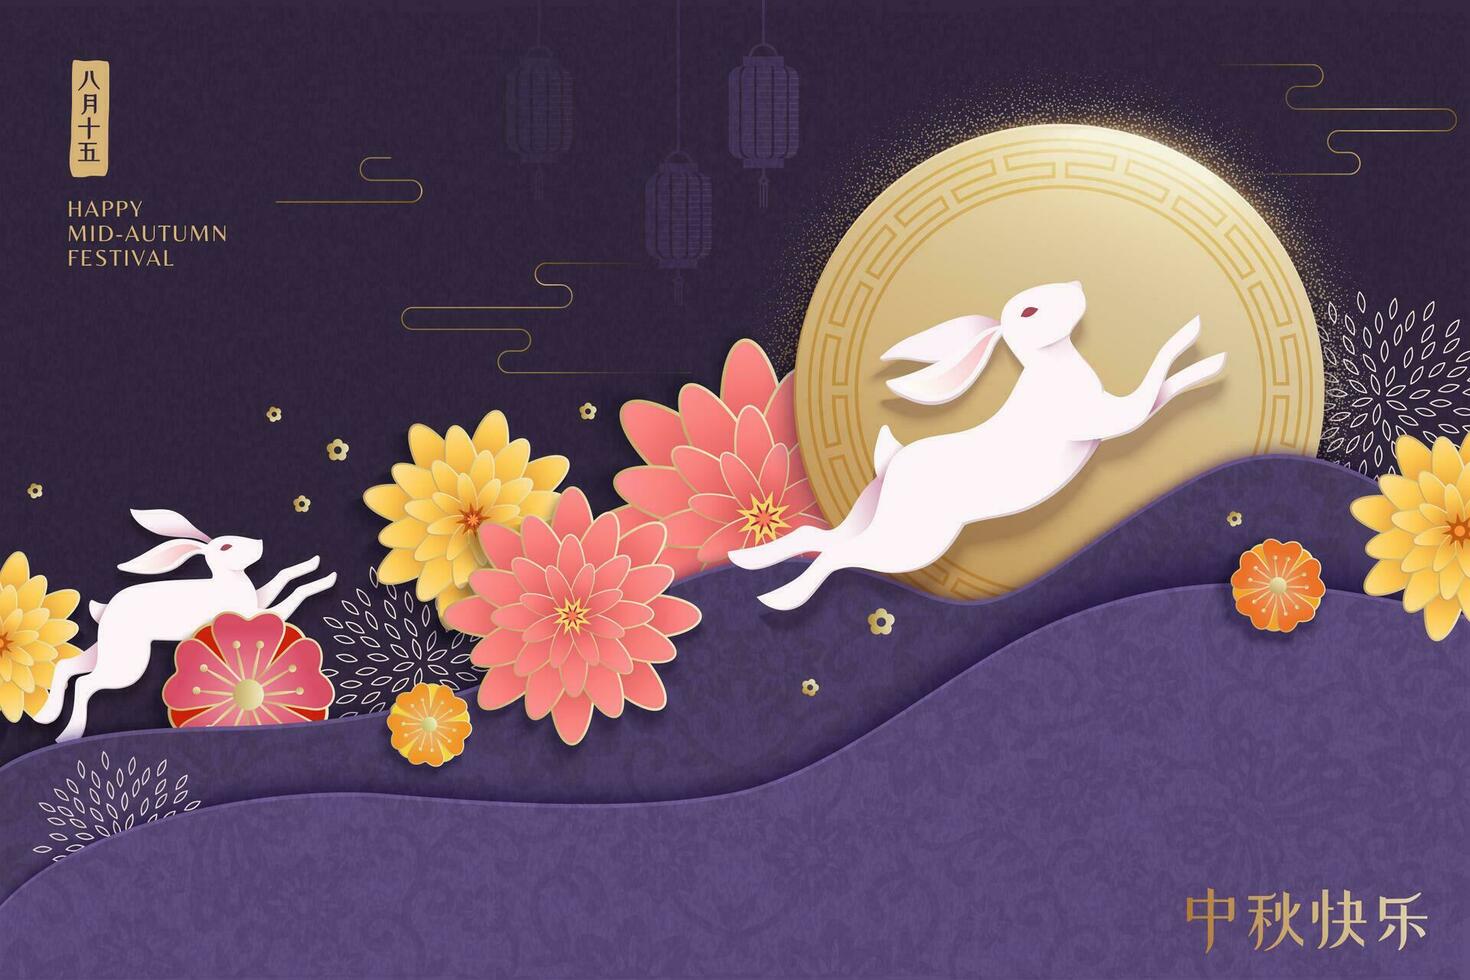 mitte Herbst Festival Design mit Kaninchen und Blumen Dekorationen auf lila Hintergrund, Feiertage Name geschrieben im Chinesisch Wörter vektor